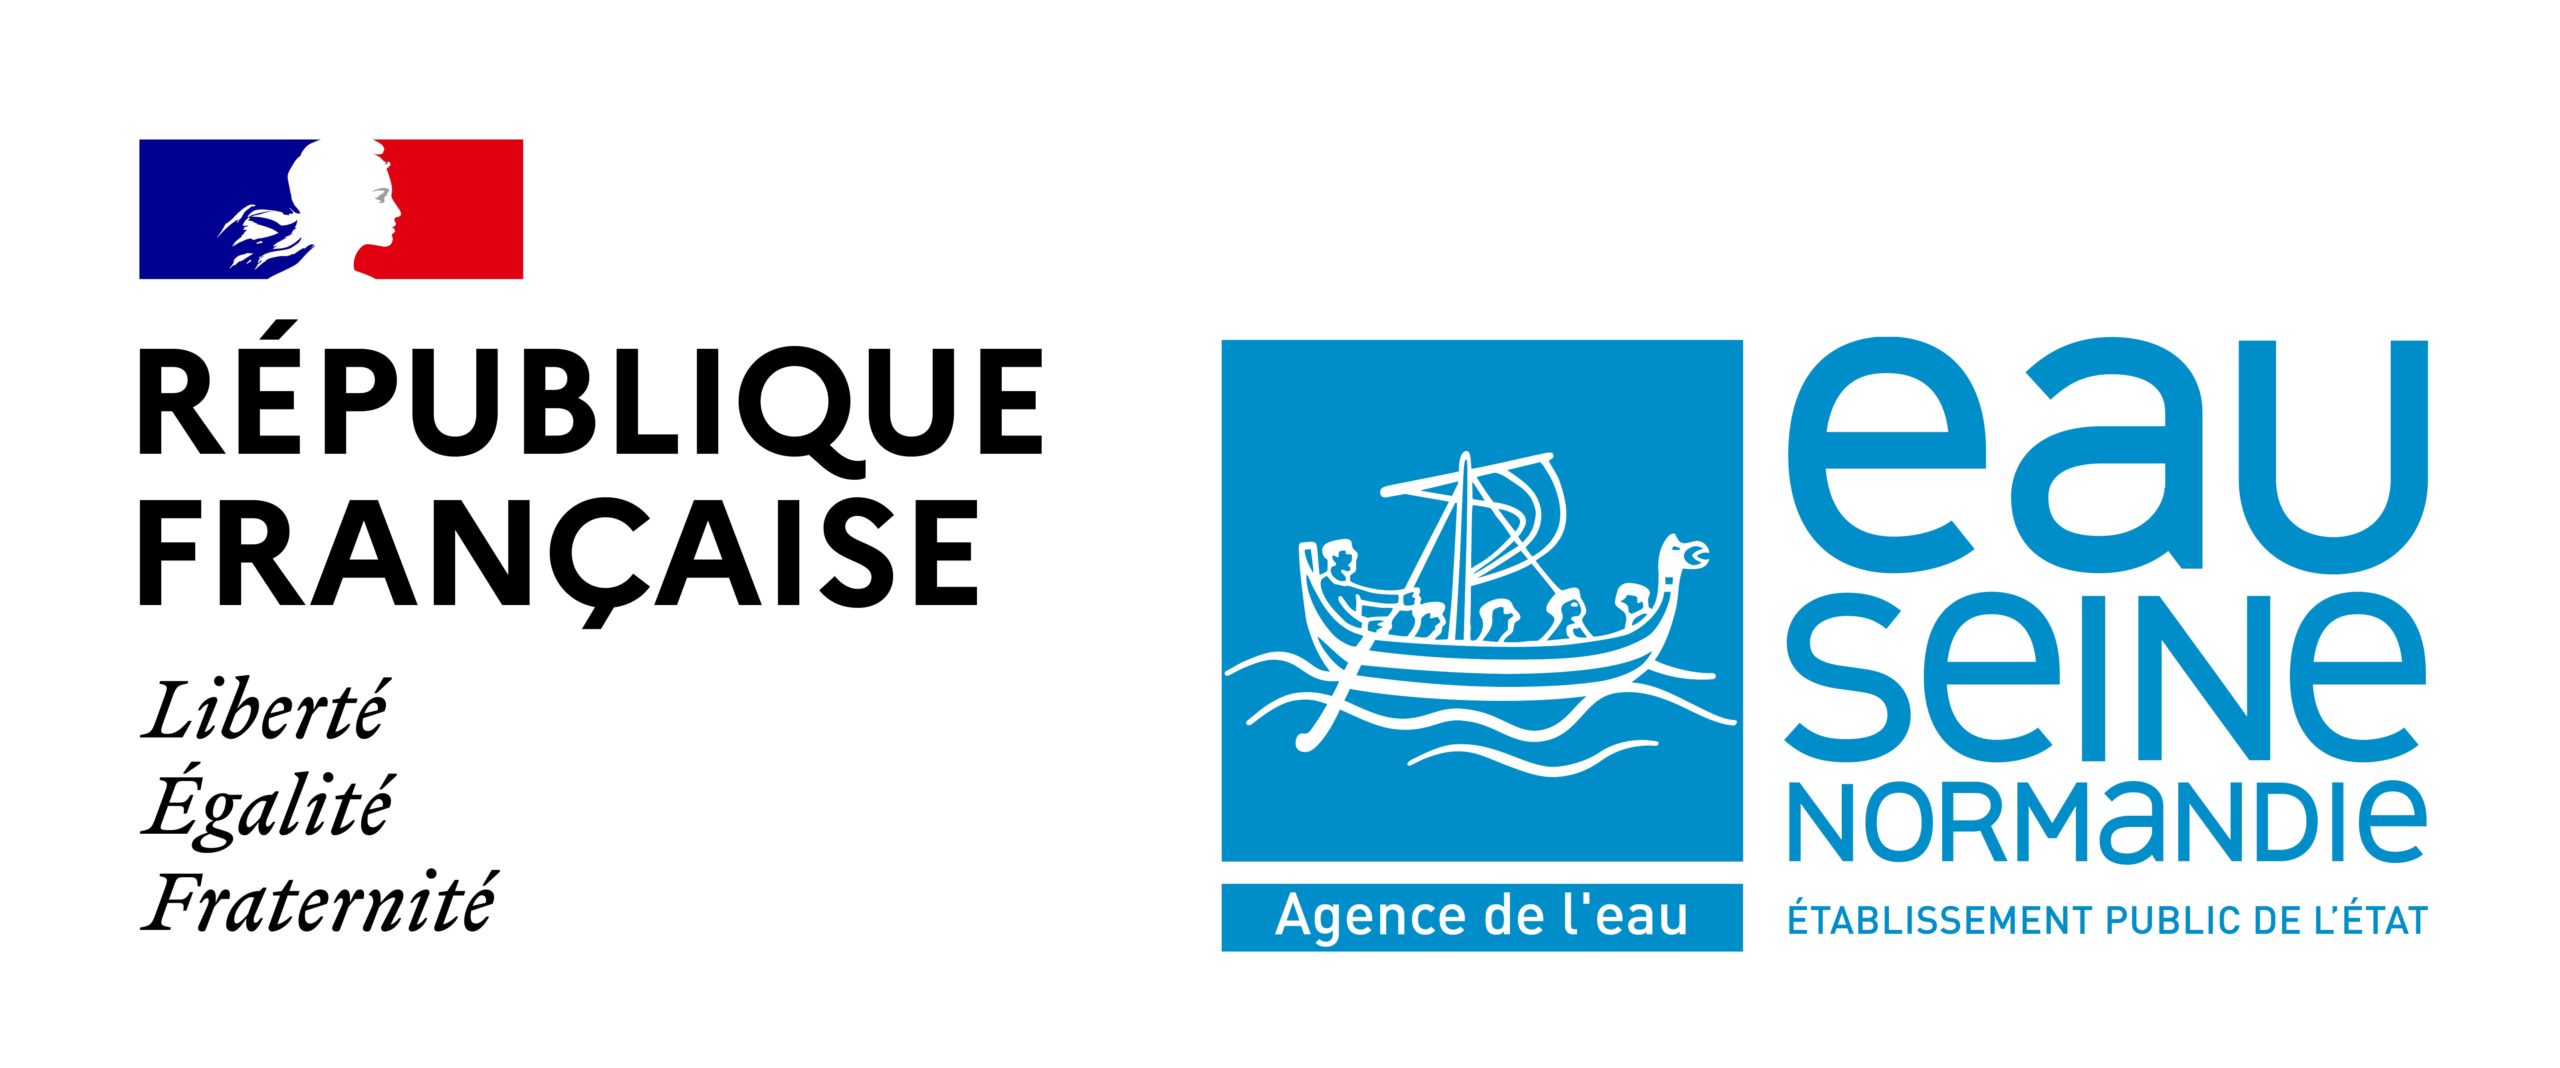 Agence de l'eau Seine-Normandie